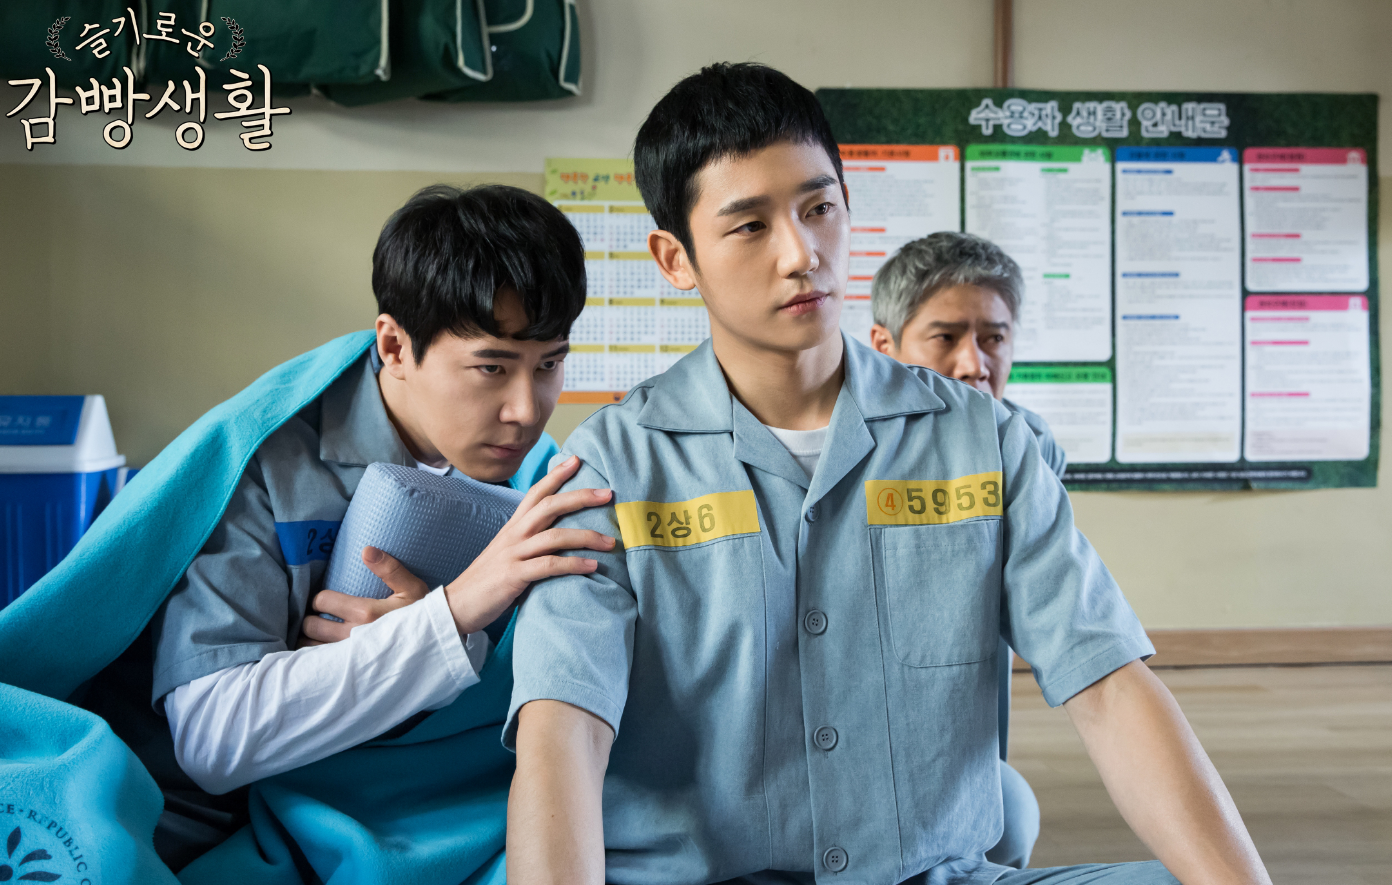 的监狱生活》又名机智牢房生活,于2017年11月上映的悬疑韩国电视剧